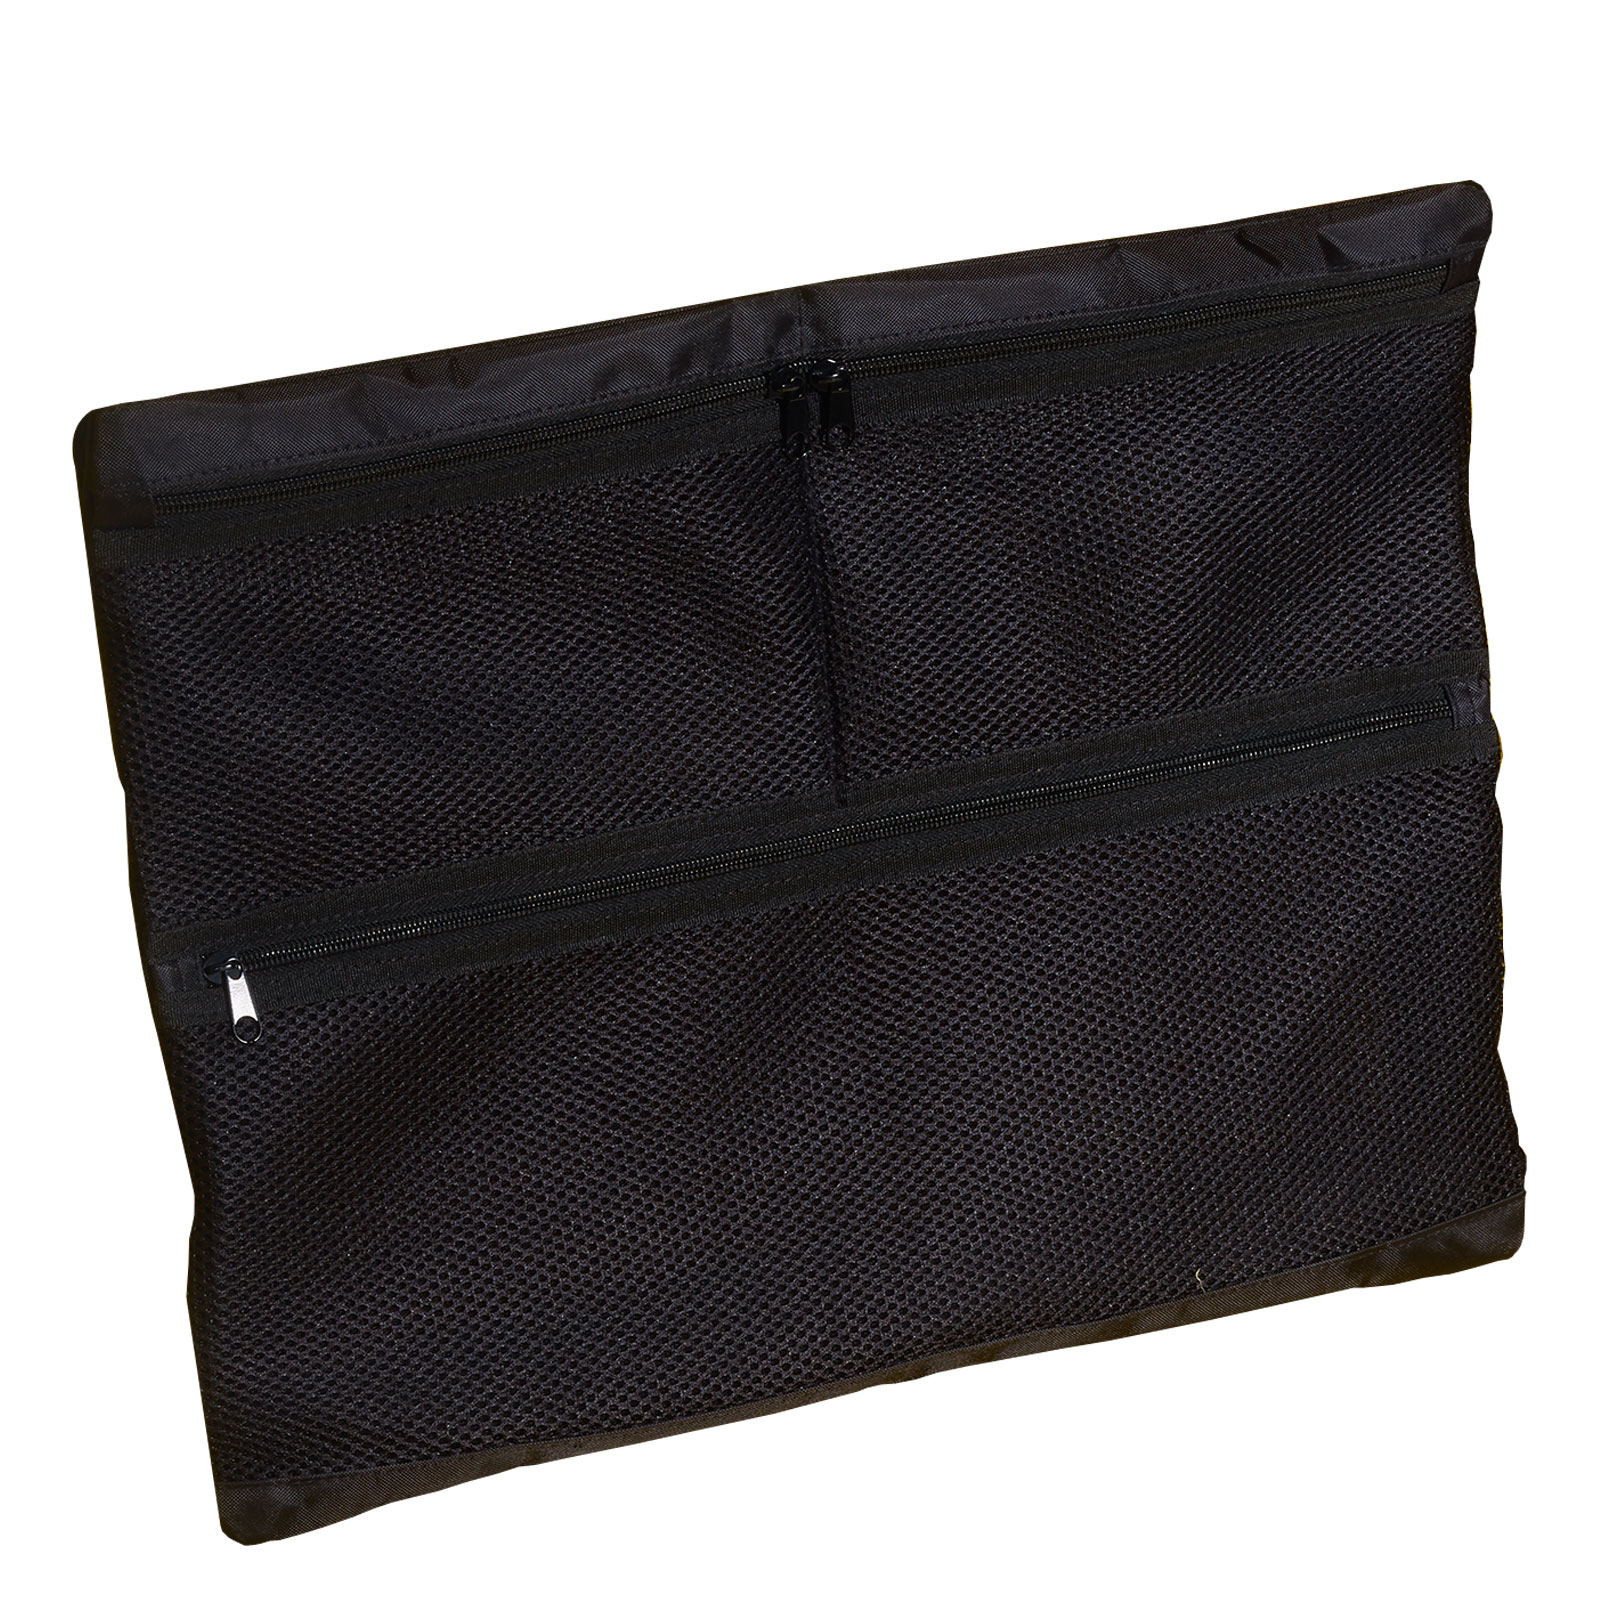 B&W Netz-Deckeltasche für Outdoor Cases, Typ 6500 / 6800